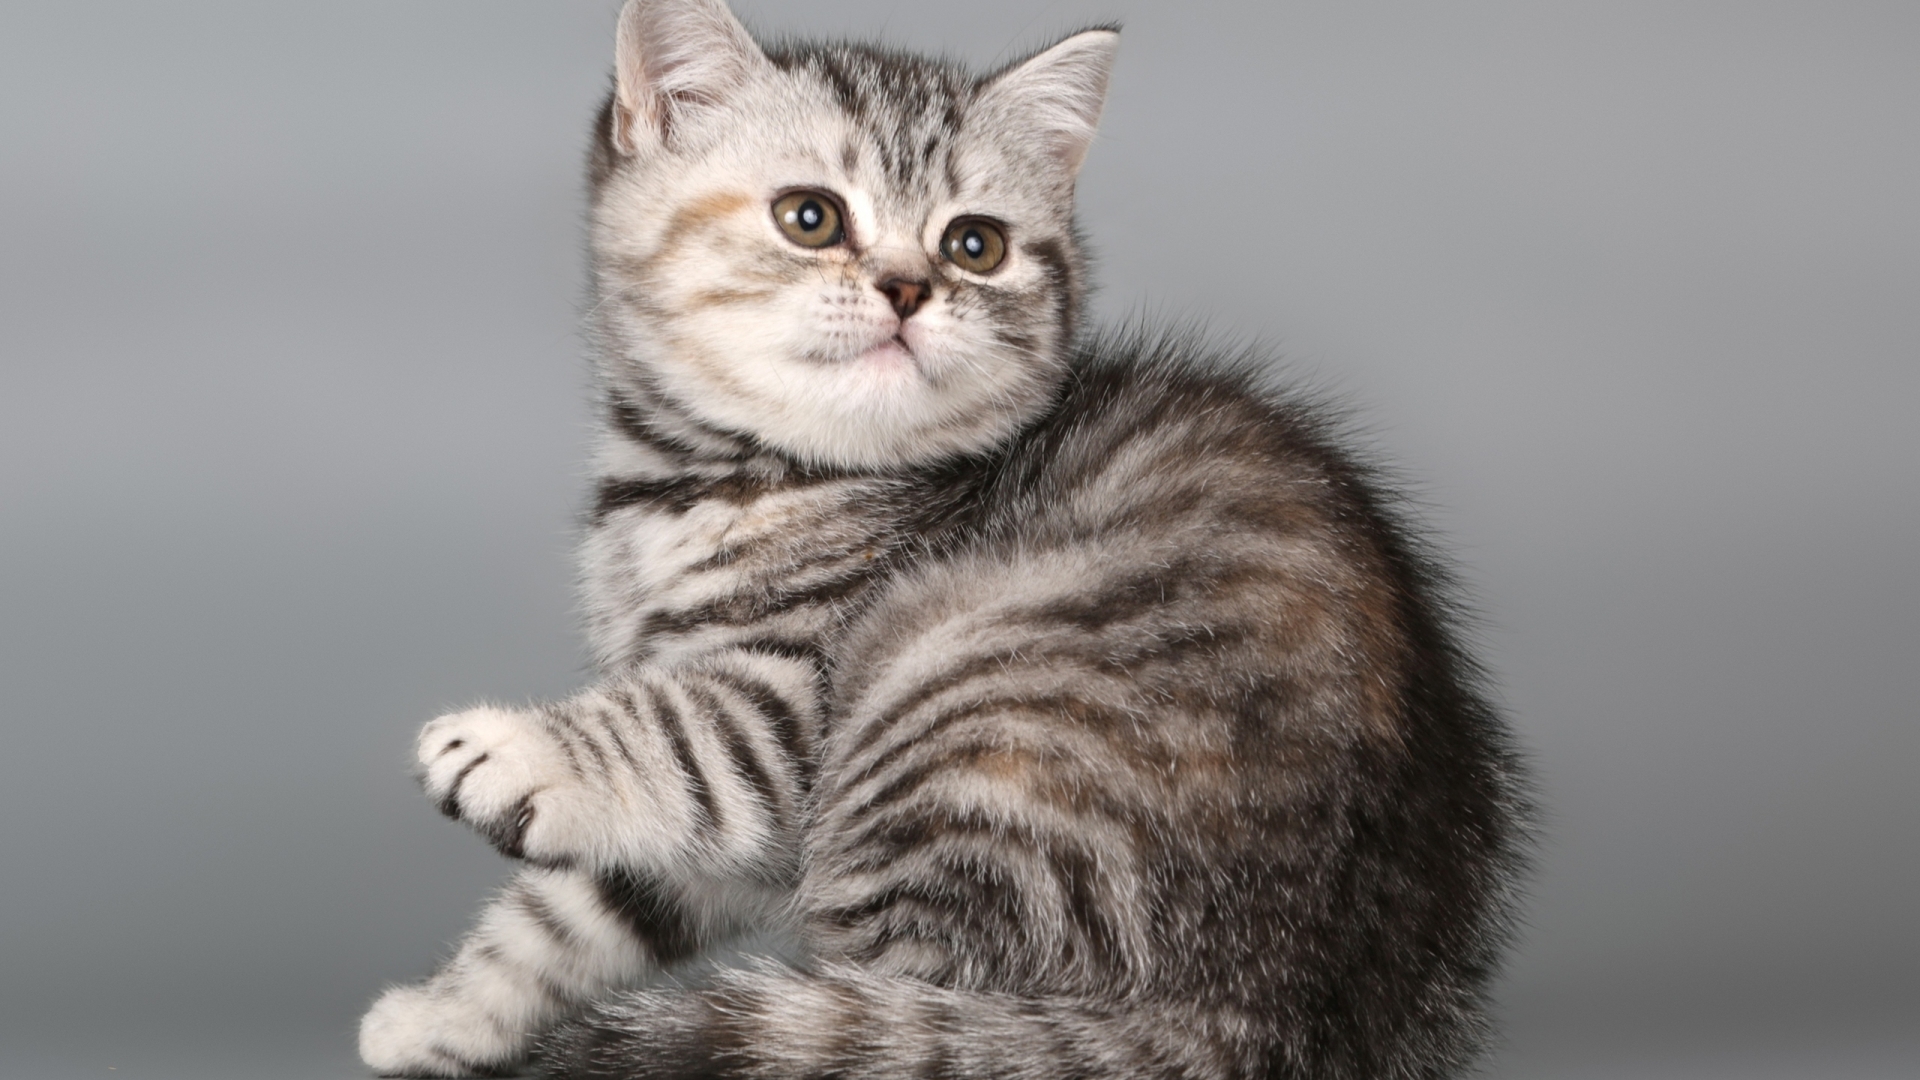 British Shorthair Kitten for 1920 x 1080 HDTV 1080p resolution